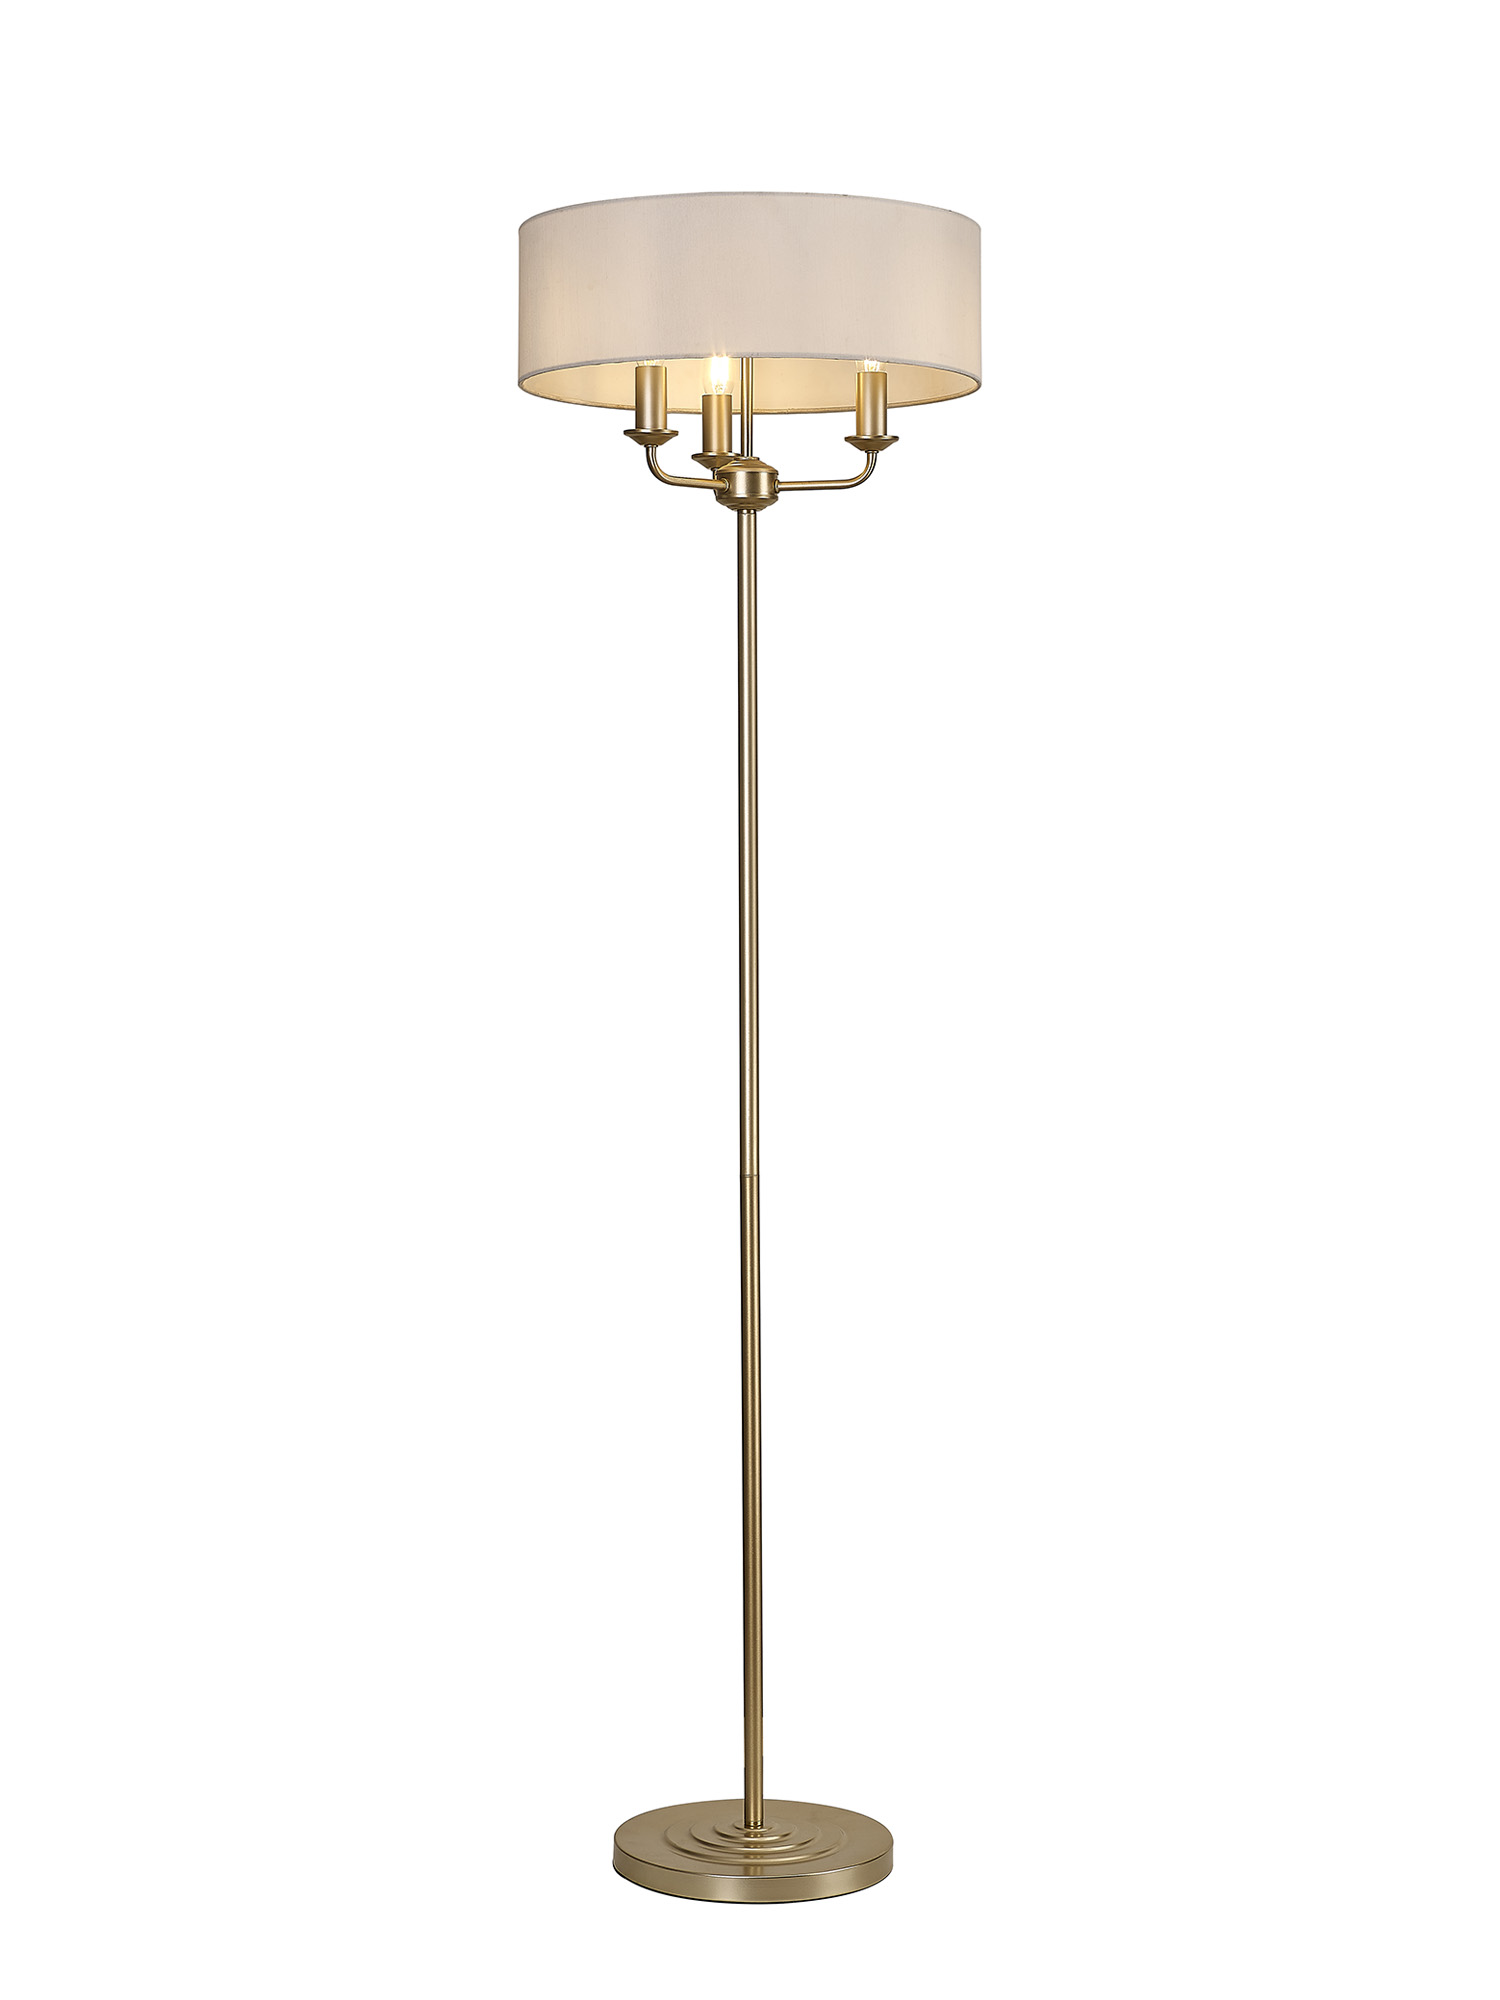 DK0987  Banyan 45cm 3 Light Floor Lamp Champagne Gold; White